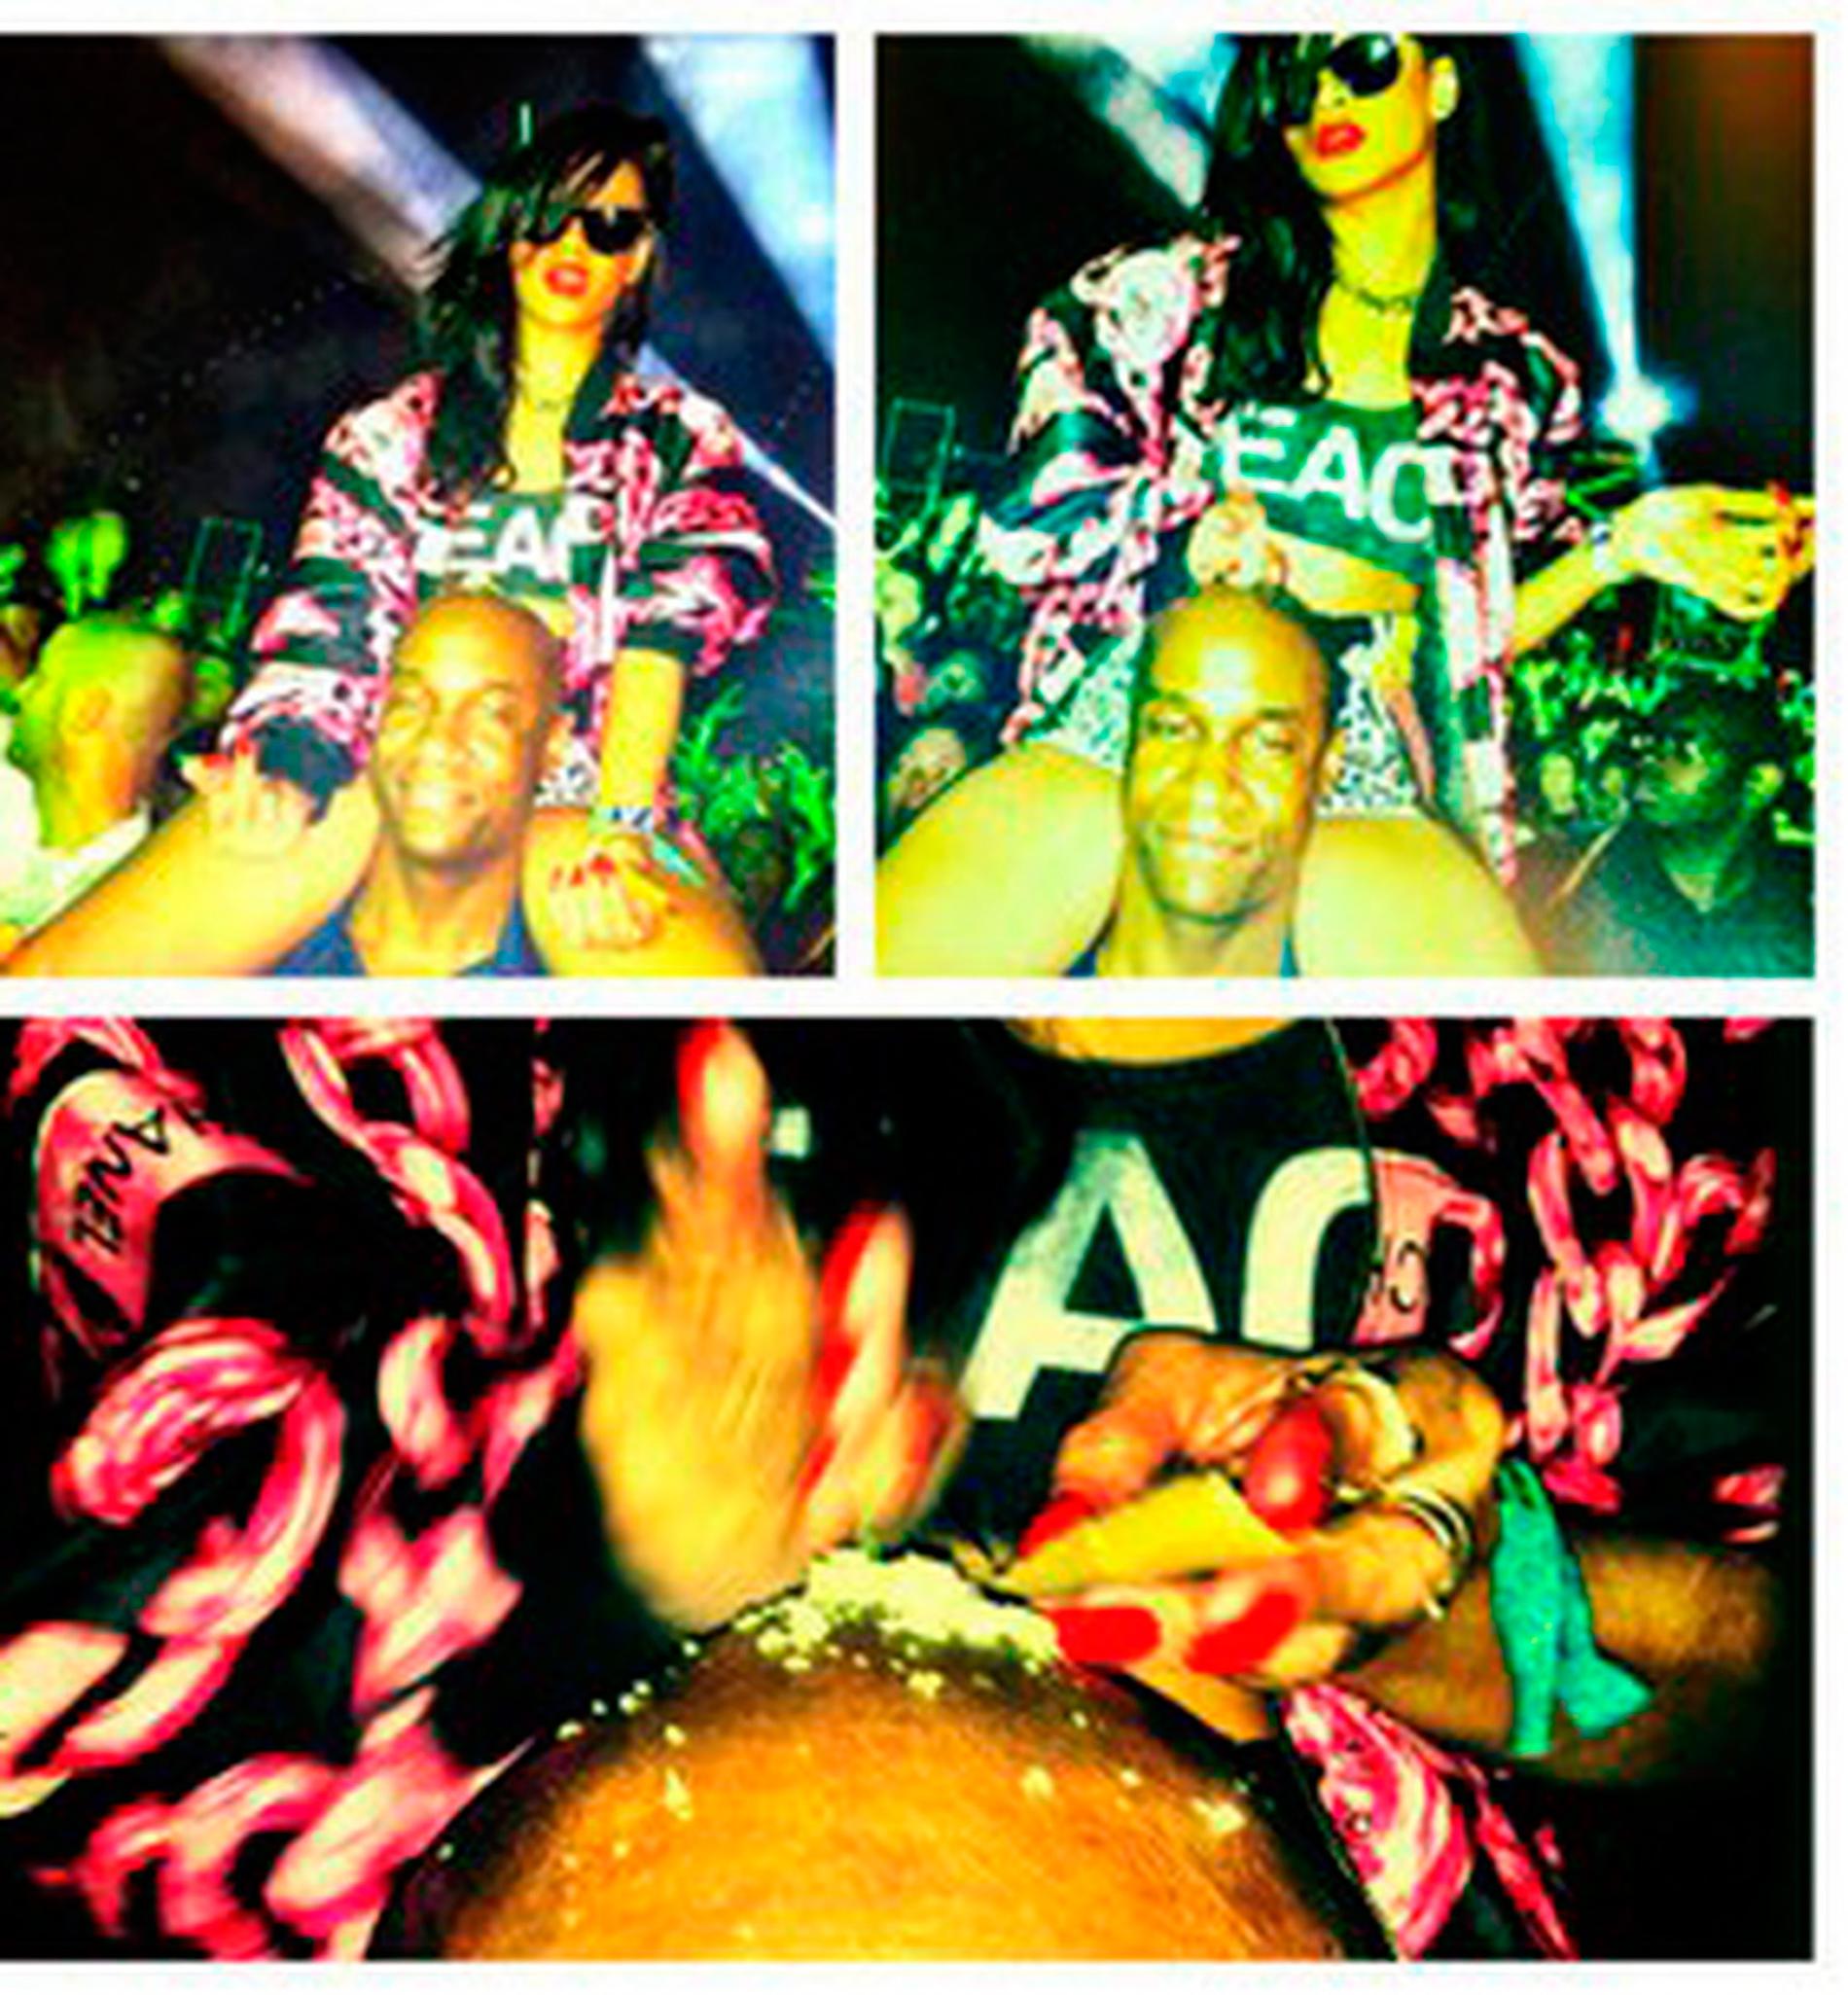 Senaste skandalen: Rihanna häller ut ett vitt pulver på en mans huvud under en konsert.
FOTON: ALL OVER PRESS, BULLS, TWITTER, INSTAGRAM,